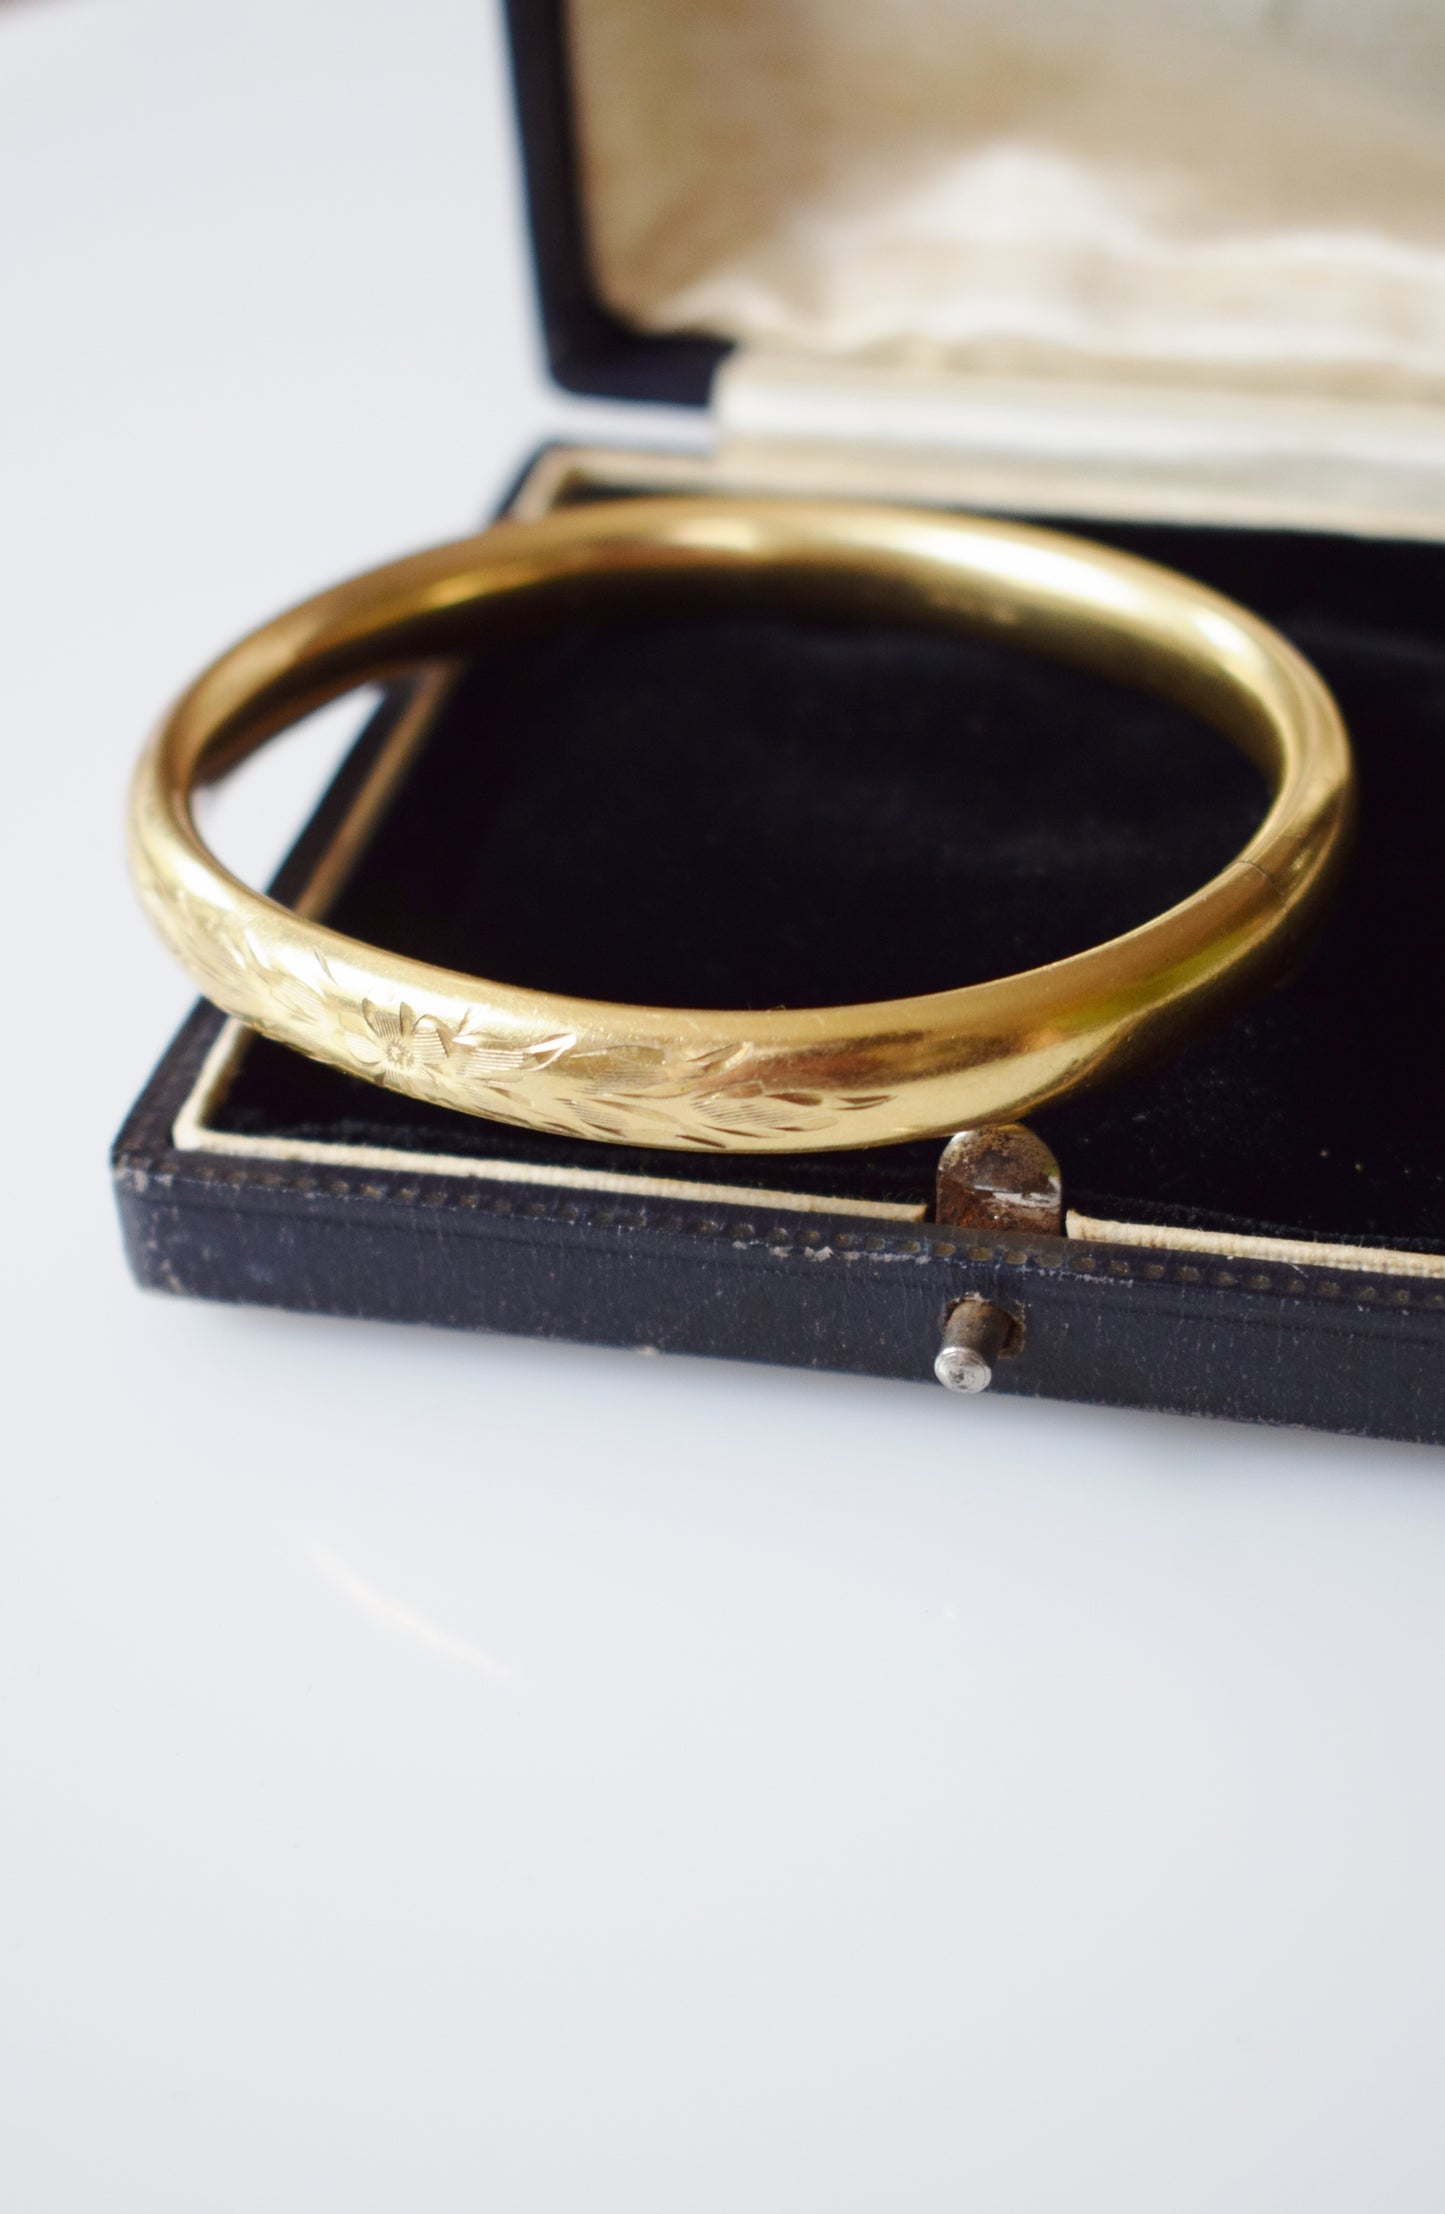 Vintage Gold-Filled Bangle Bracelet | Central Floral Motif